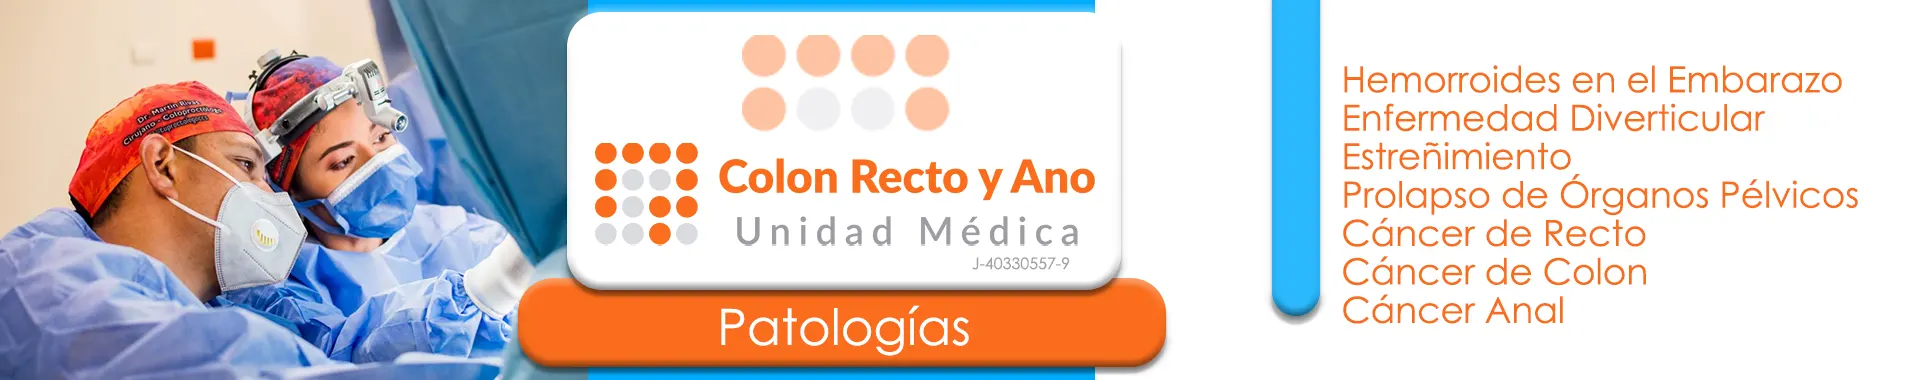 Imagen 6 del perfil de Colon Recto y Ano Unidad Médica